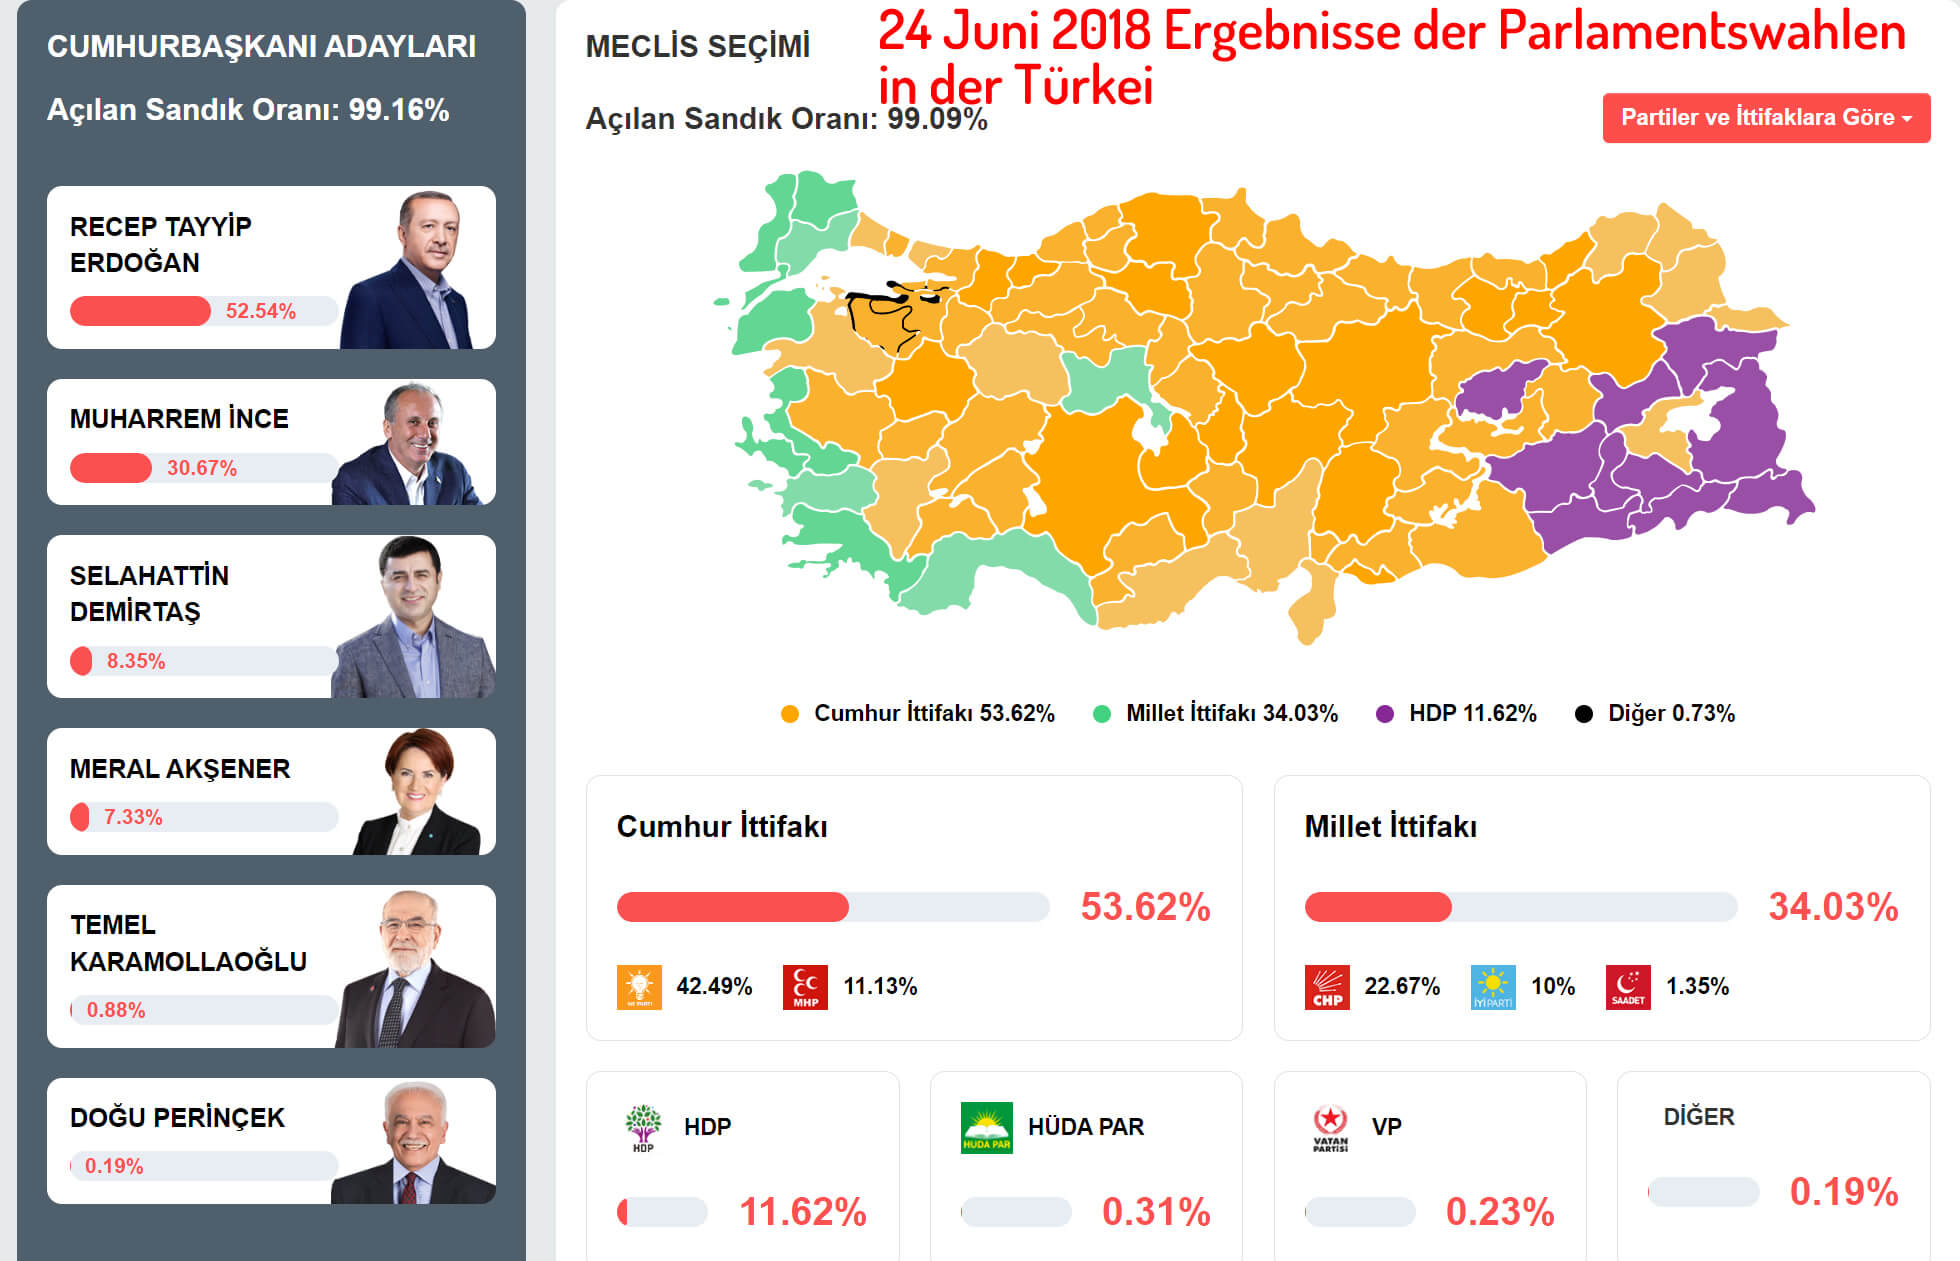 24 Juni 2018 Ergebnisse der Parlamentswahlen in der Türkei